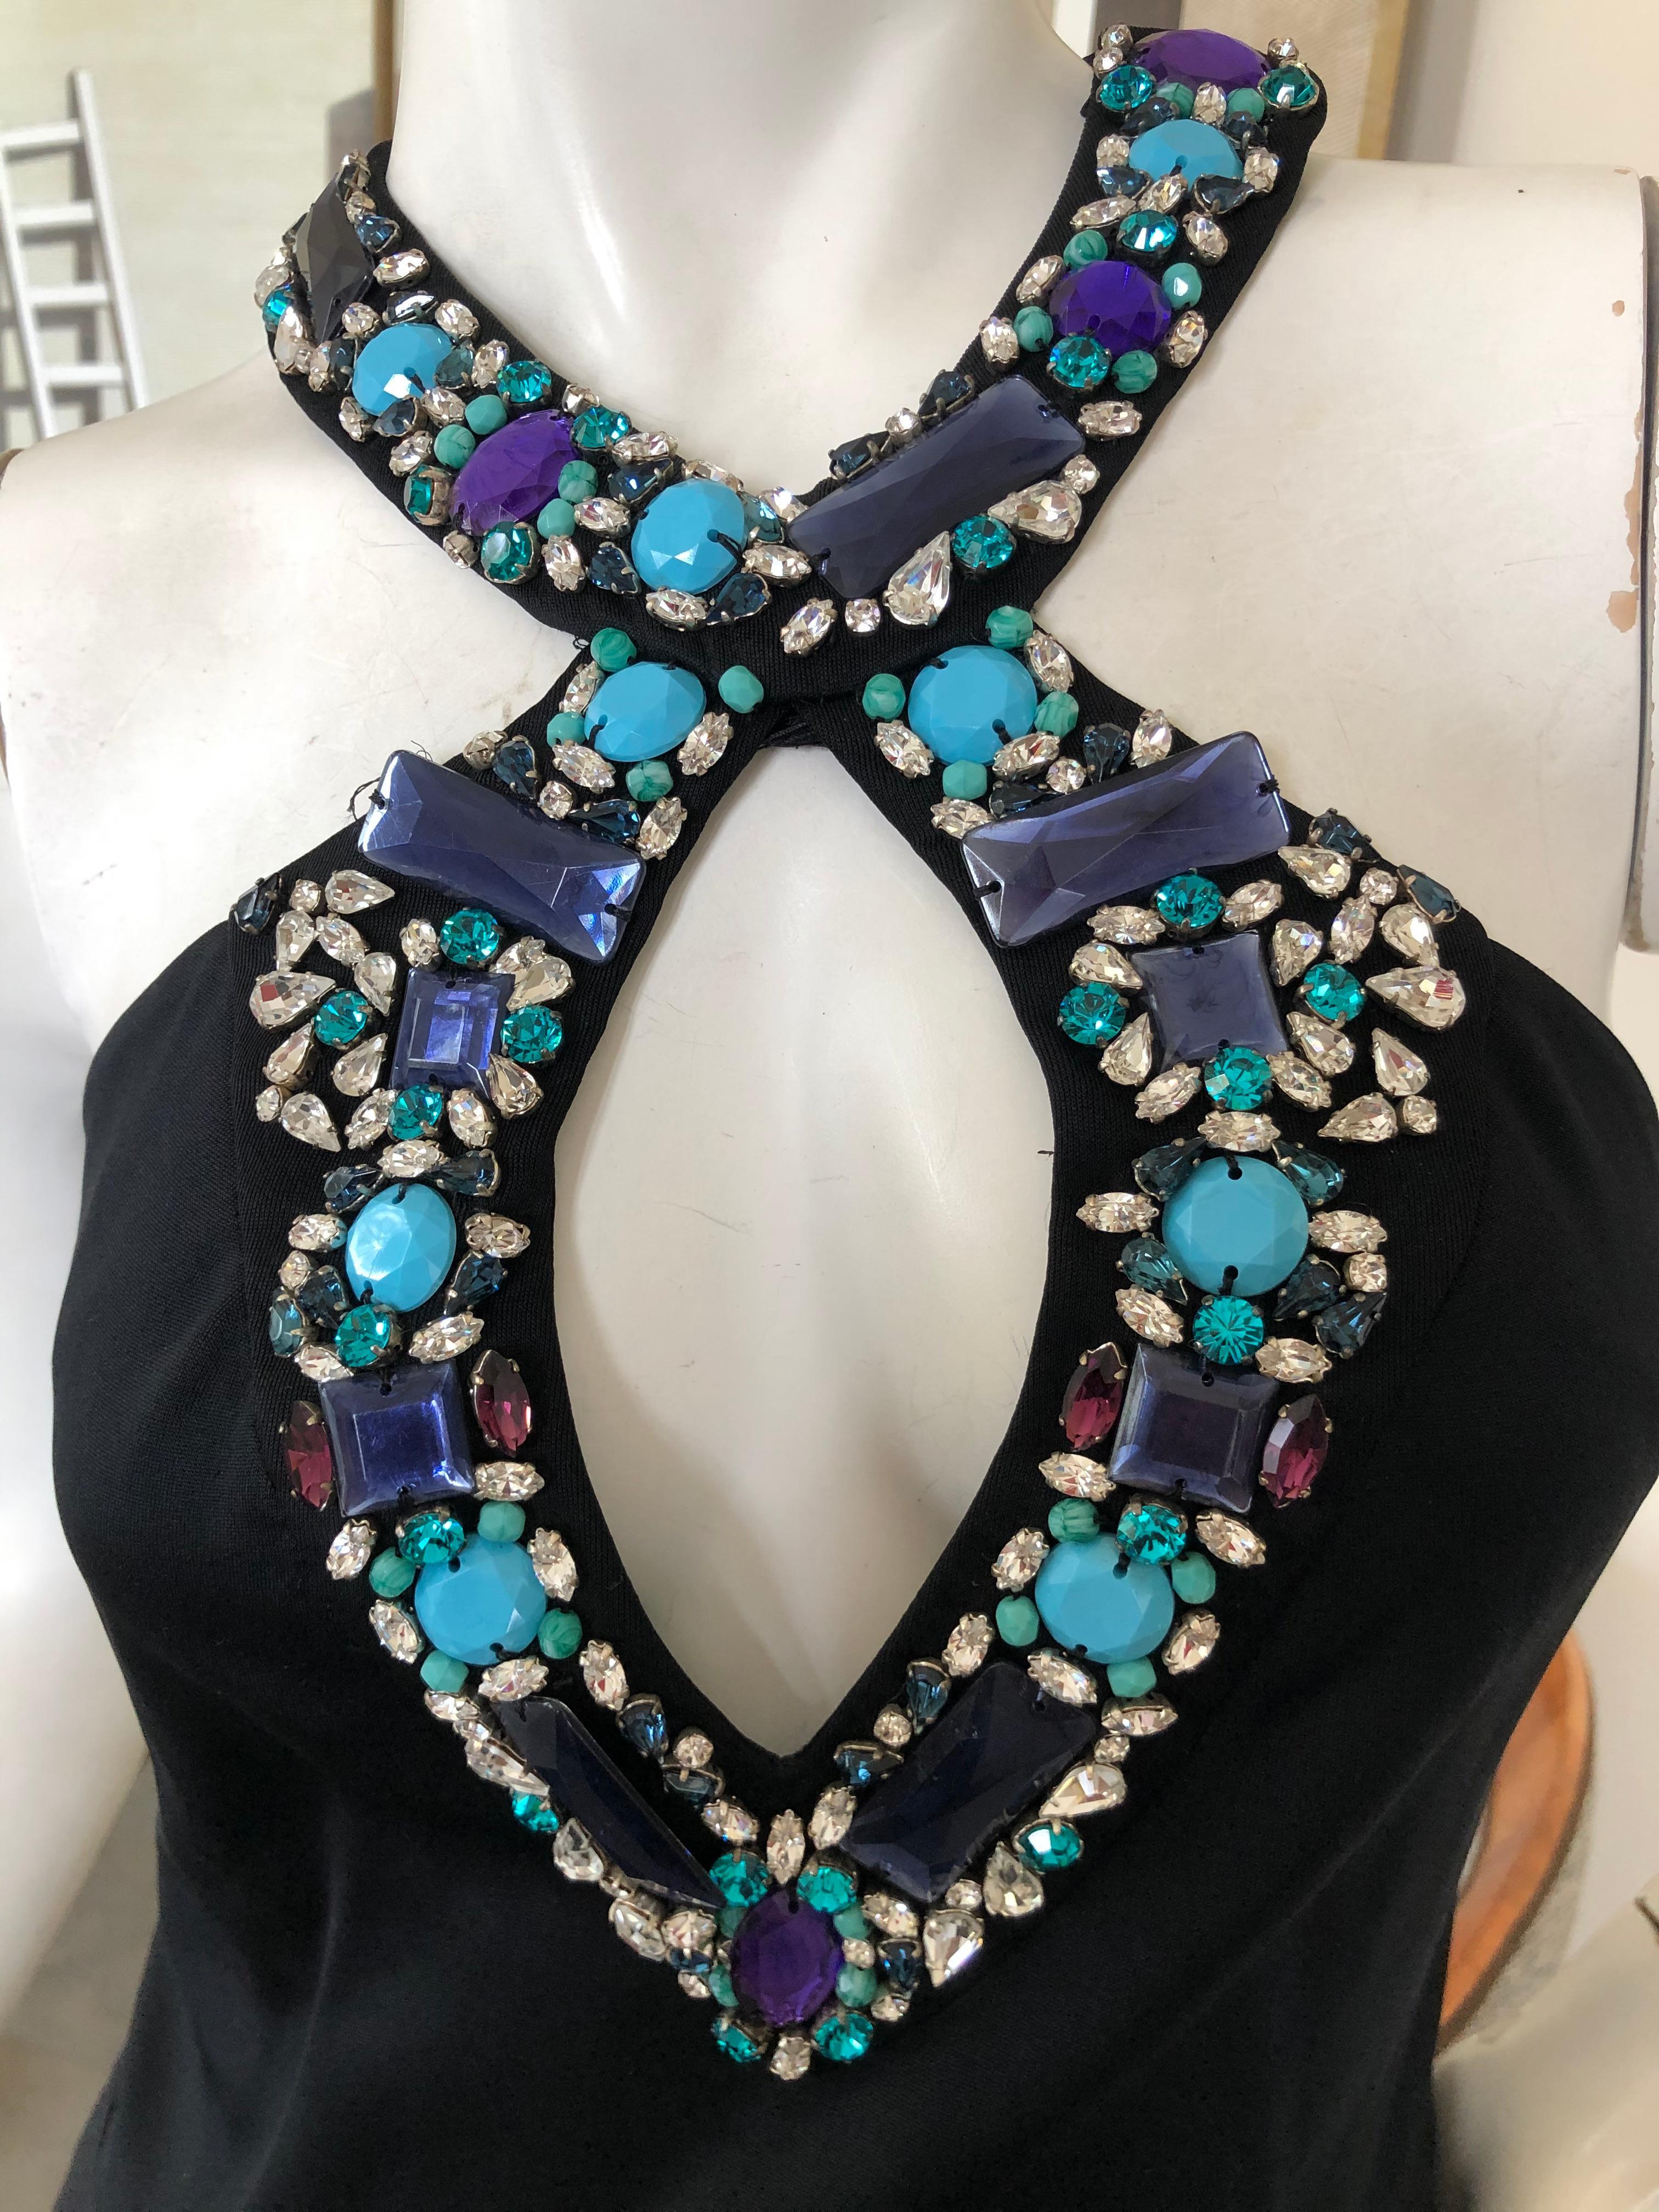 Emilio Pucci Lacroix Era Little Black Dress w Gobsmacking Jewel Embellishments For Sale 2